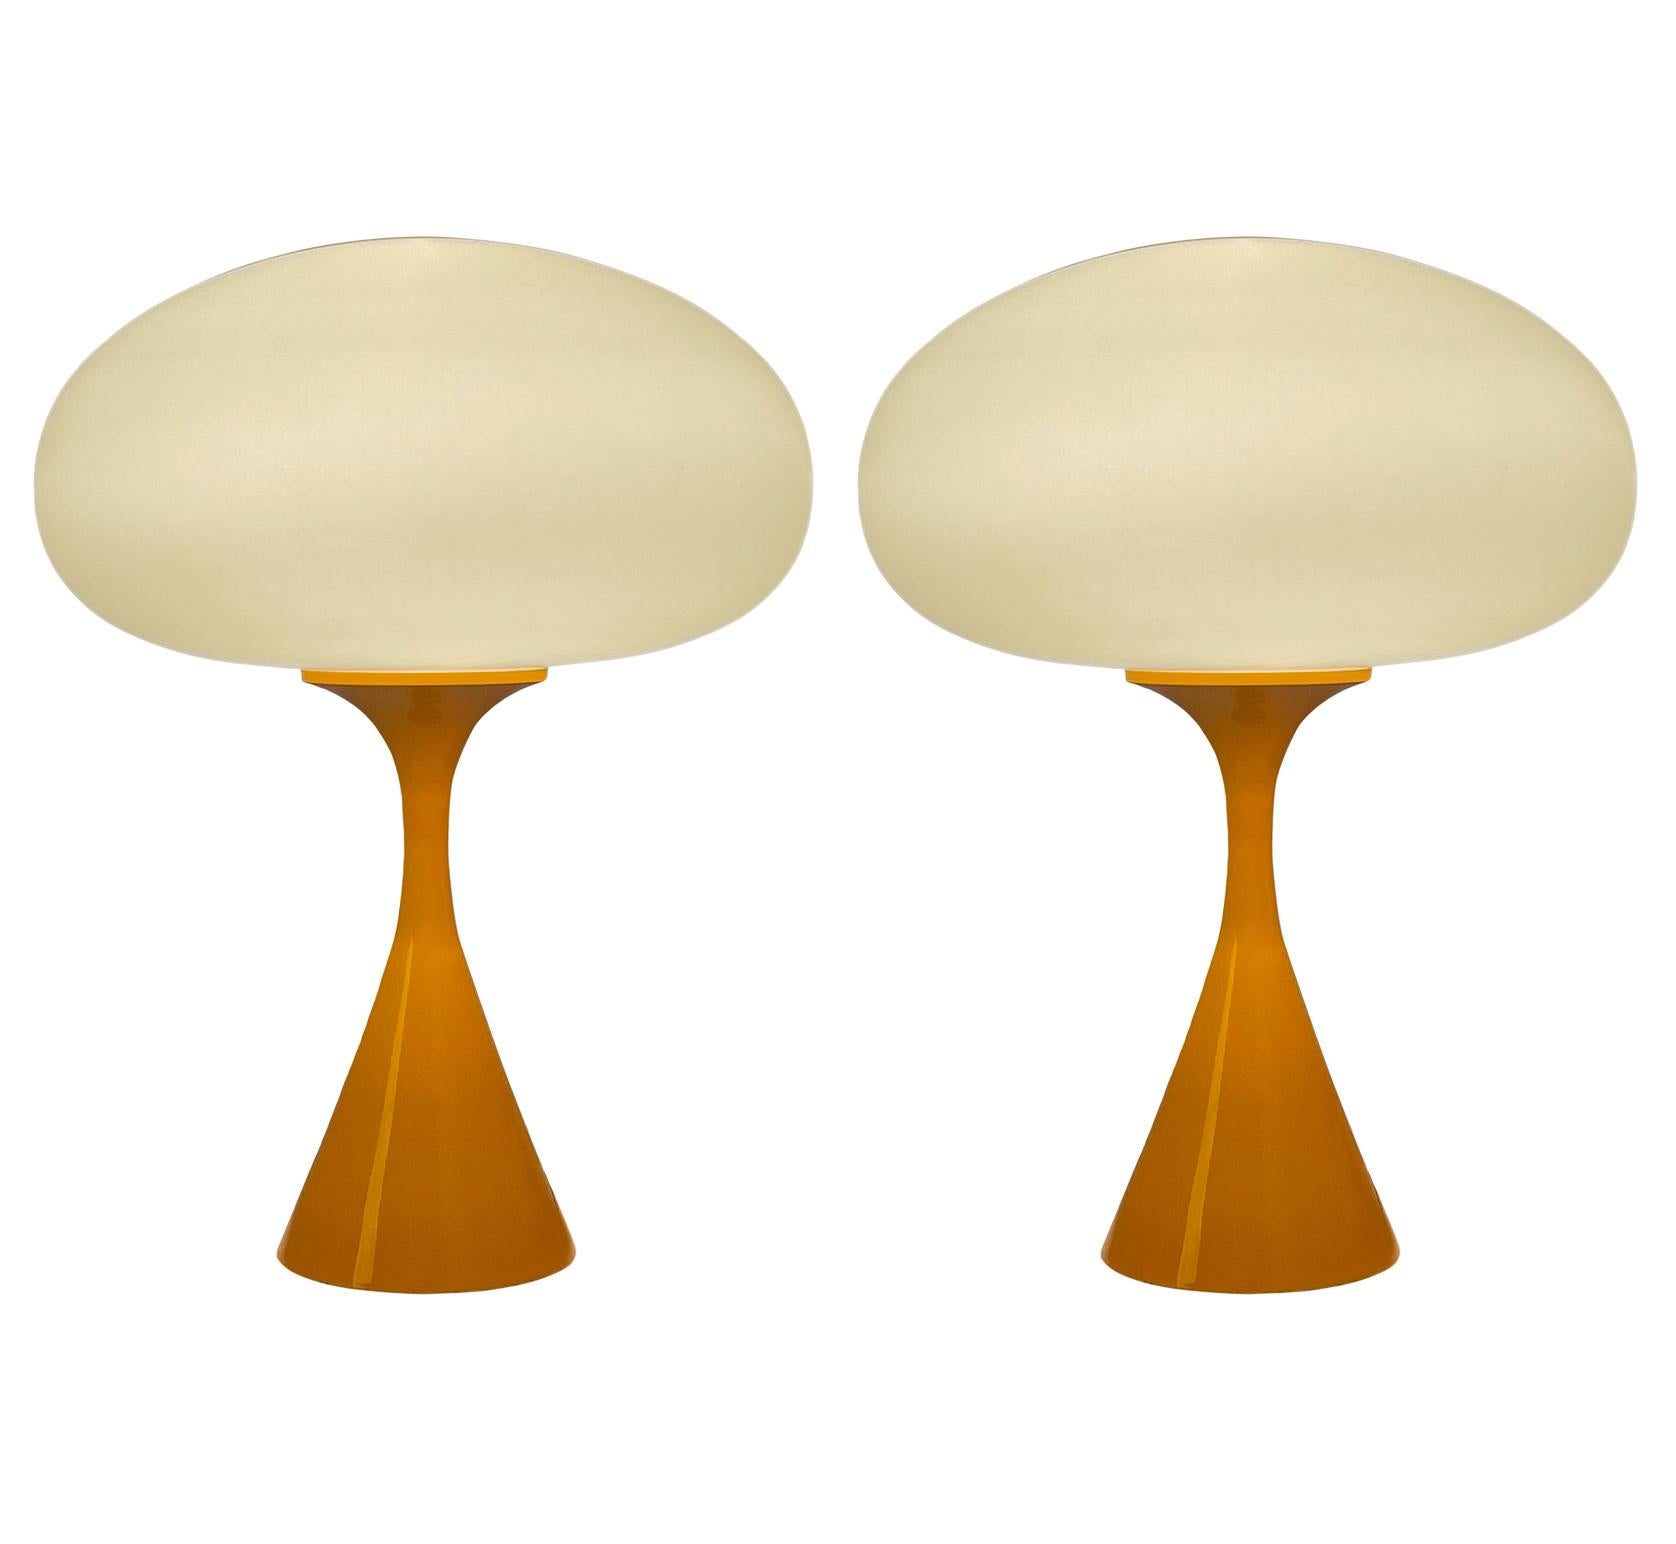 Une belle paire de lampes de table assorties en forme de champignon conique d'après Laurel Lamp Company. La lampe comporte une base en aluminium moulé avec un revêtement en poudre orange et un abat-jour en verre dépoli soufflé à la bouche. Le prix